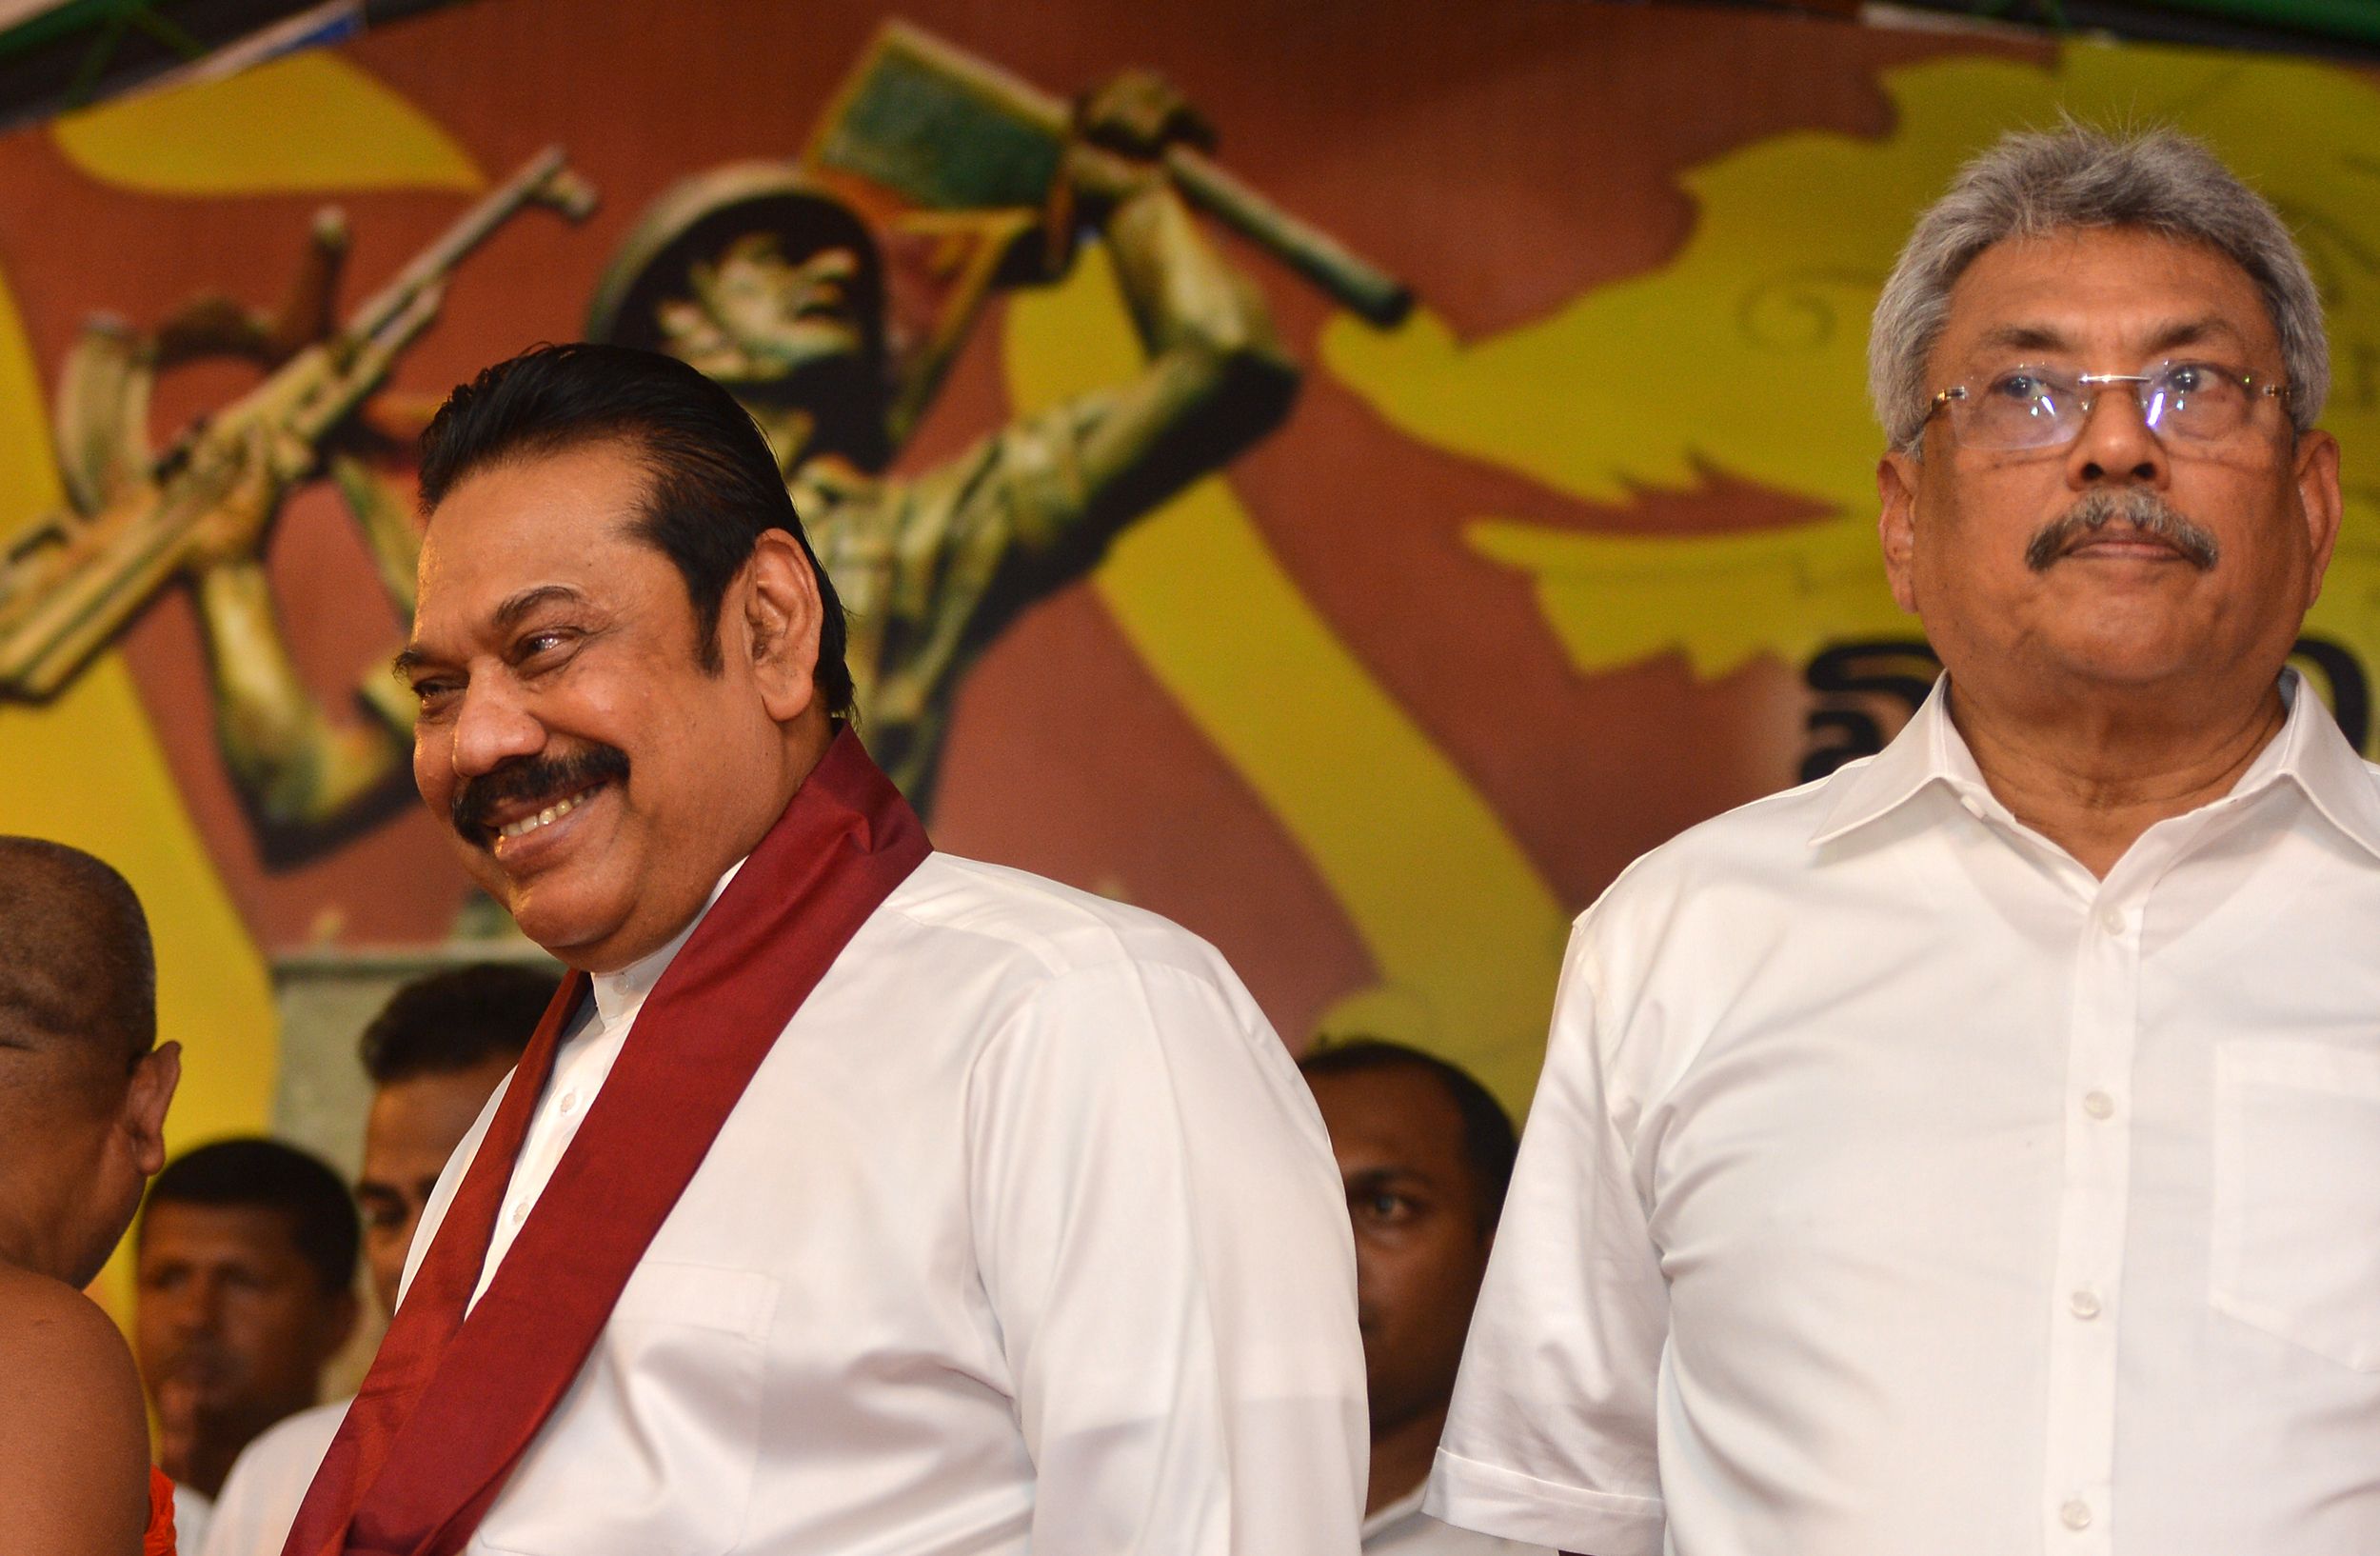 رئيس سريلانكا يحذر من تجدد تمرد نمور التاميل الانفصاليين